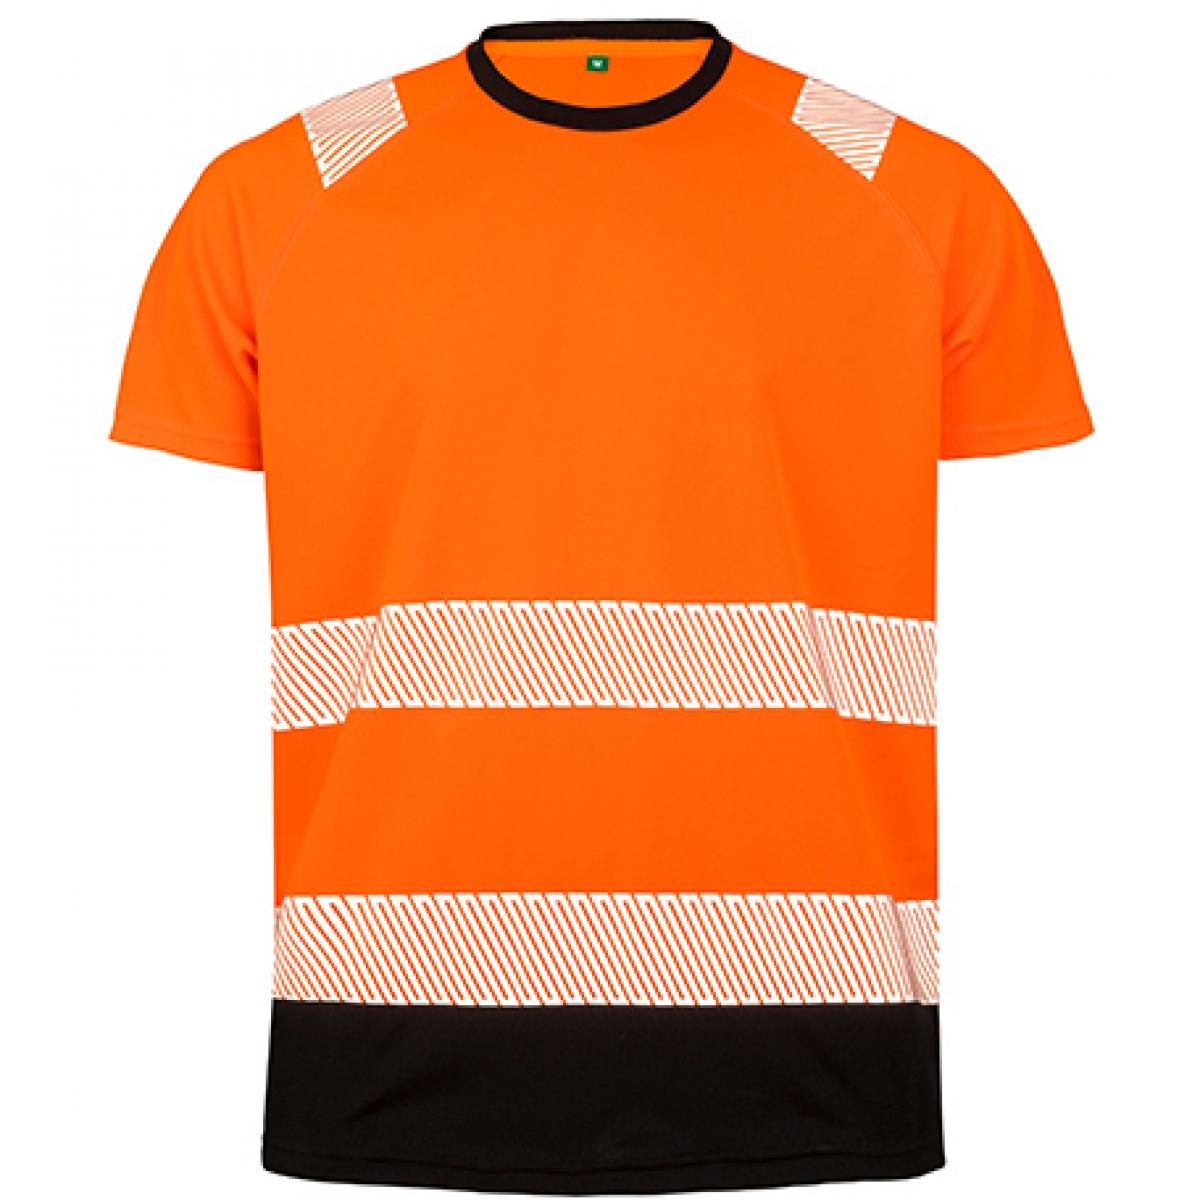 Hersteller: Result Genuine Recycled Herstellernummer: R502X Artikelbezeichnung: Recycled Safety T-Shirt - Sicherheitstshirt - Atmungsaktiv Farbe: Fluorescent Orange/Black